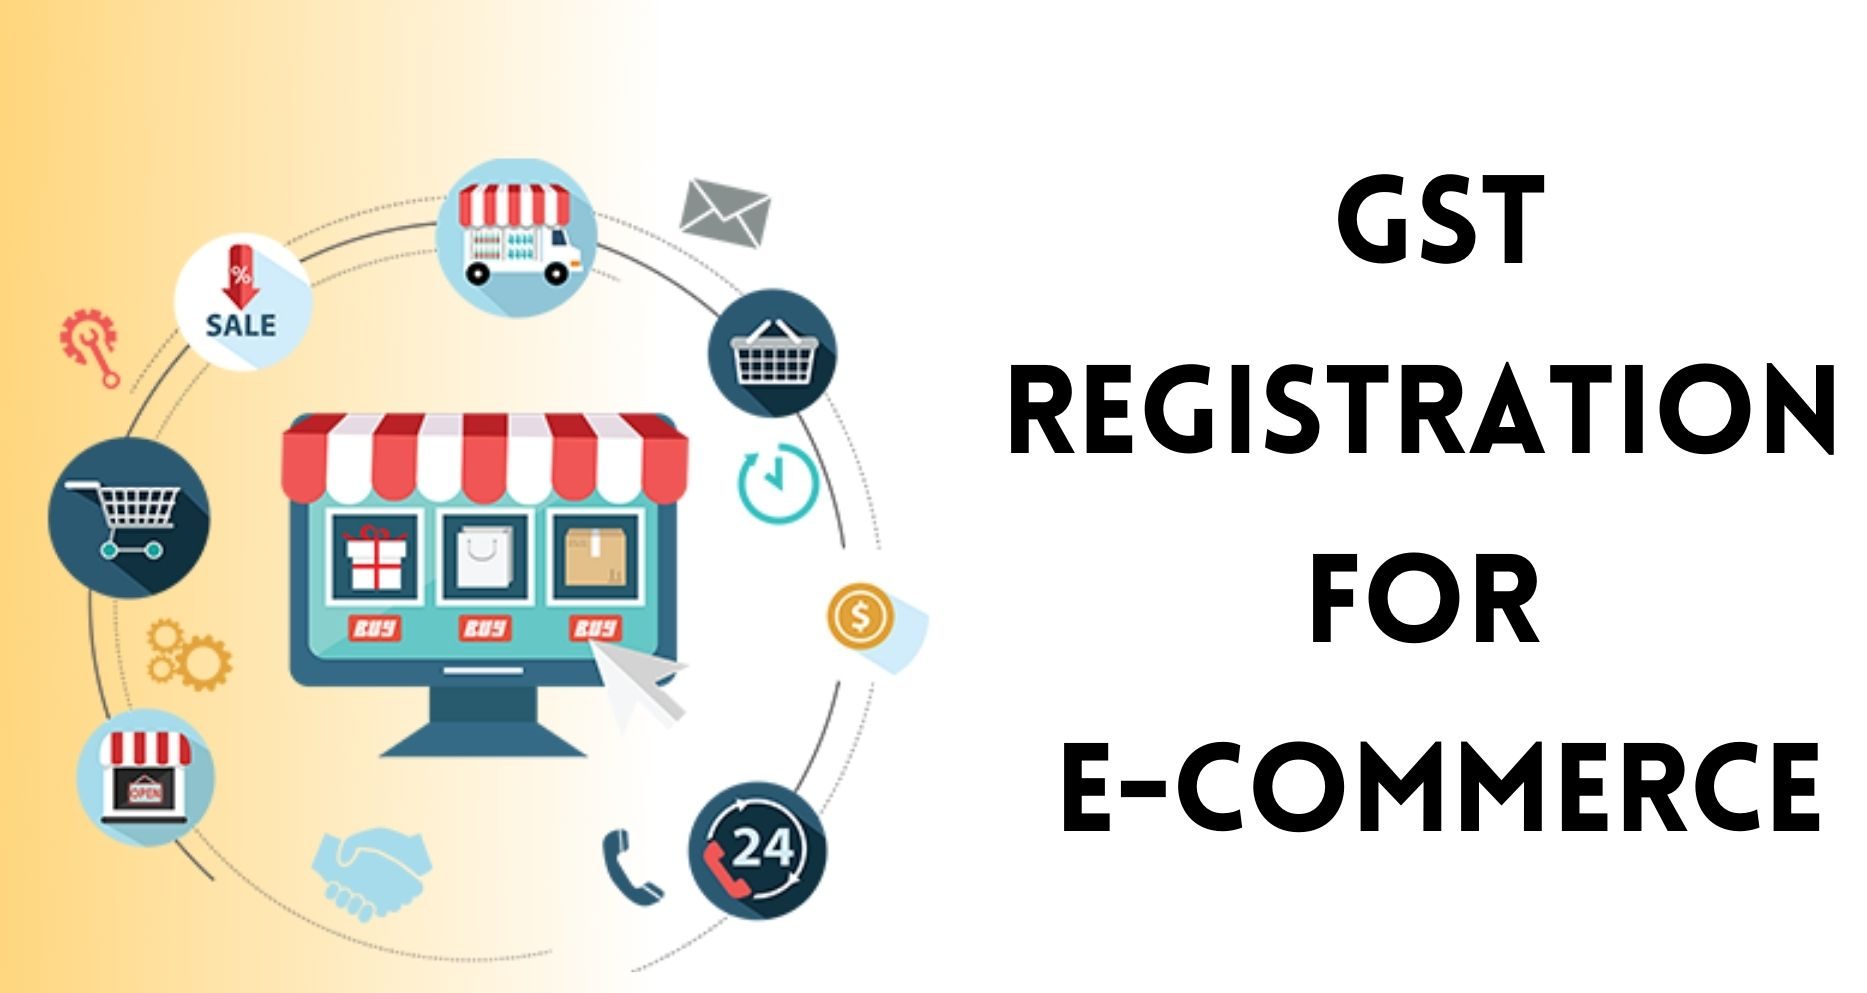 GST Registration For E-commerce